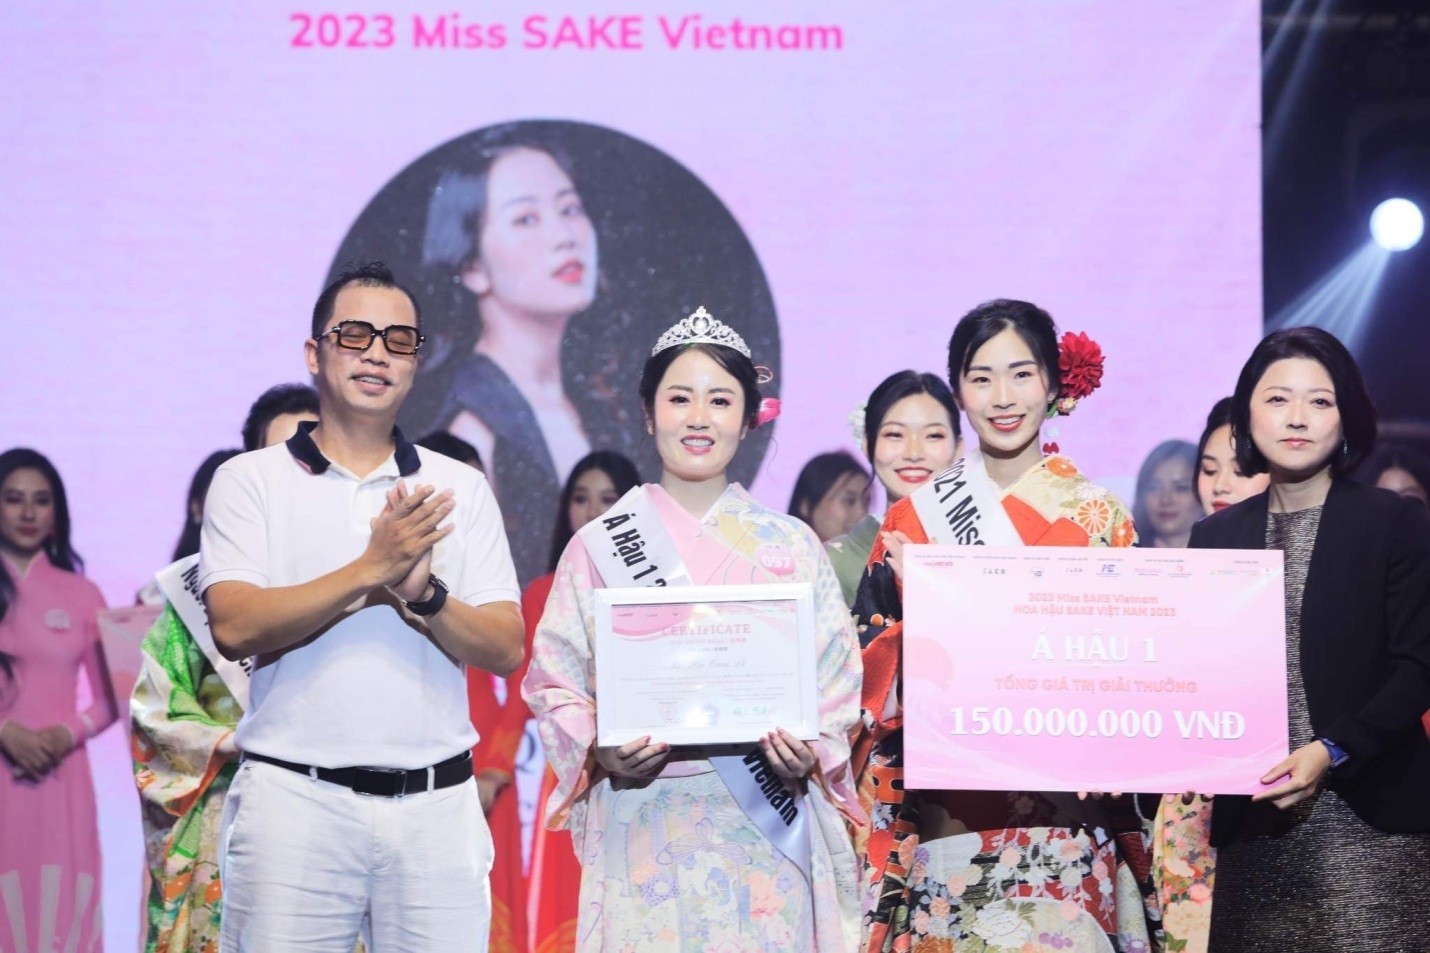 Khoảnh khắc Á hậu 1 Miss Sake Việt Nam 2023 gọi tên Hà Thị Cẩm Lệ